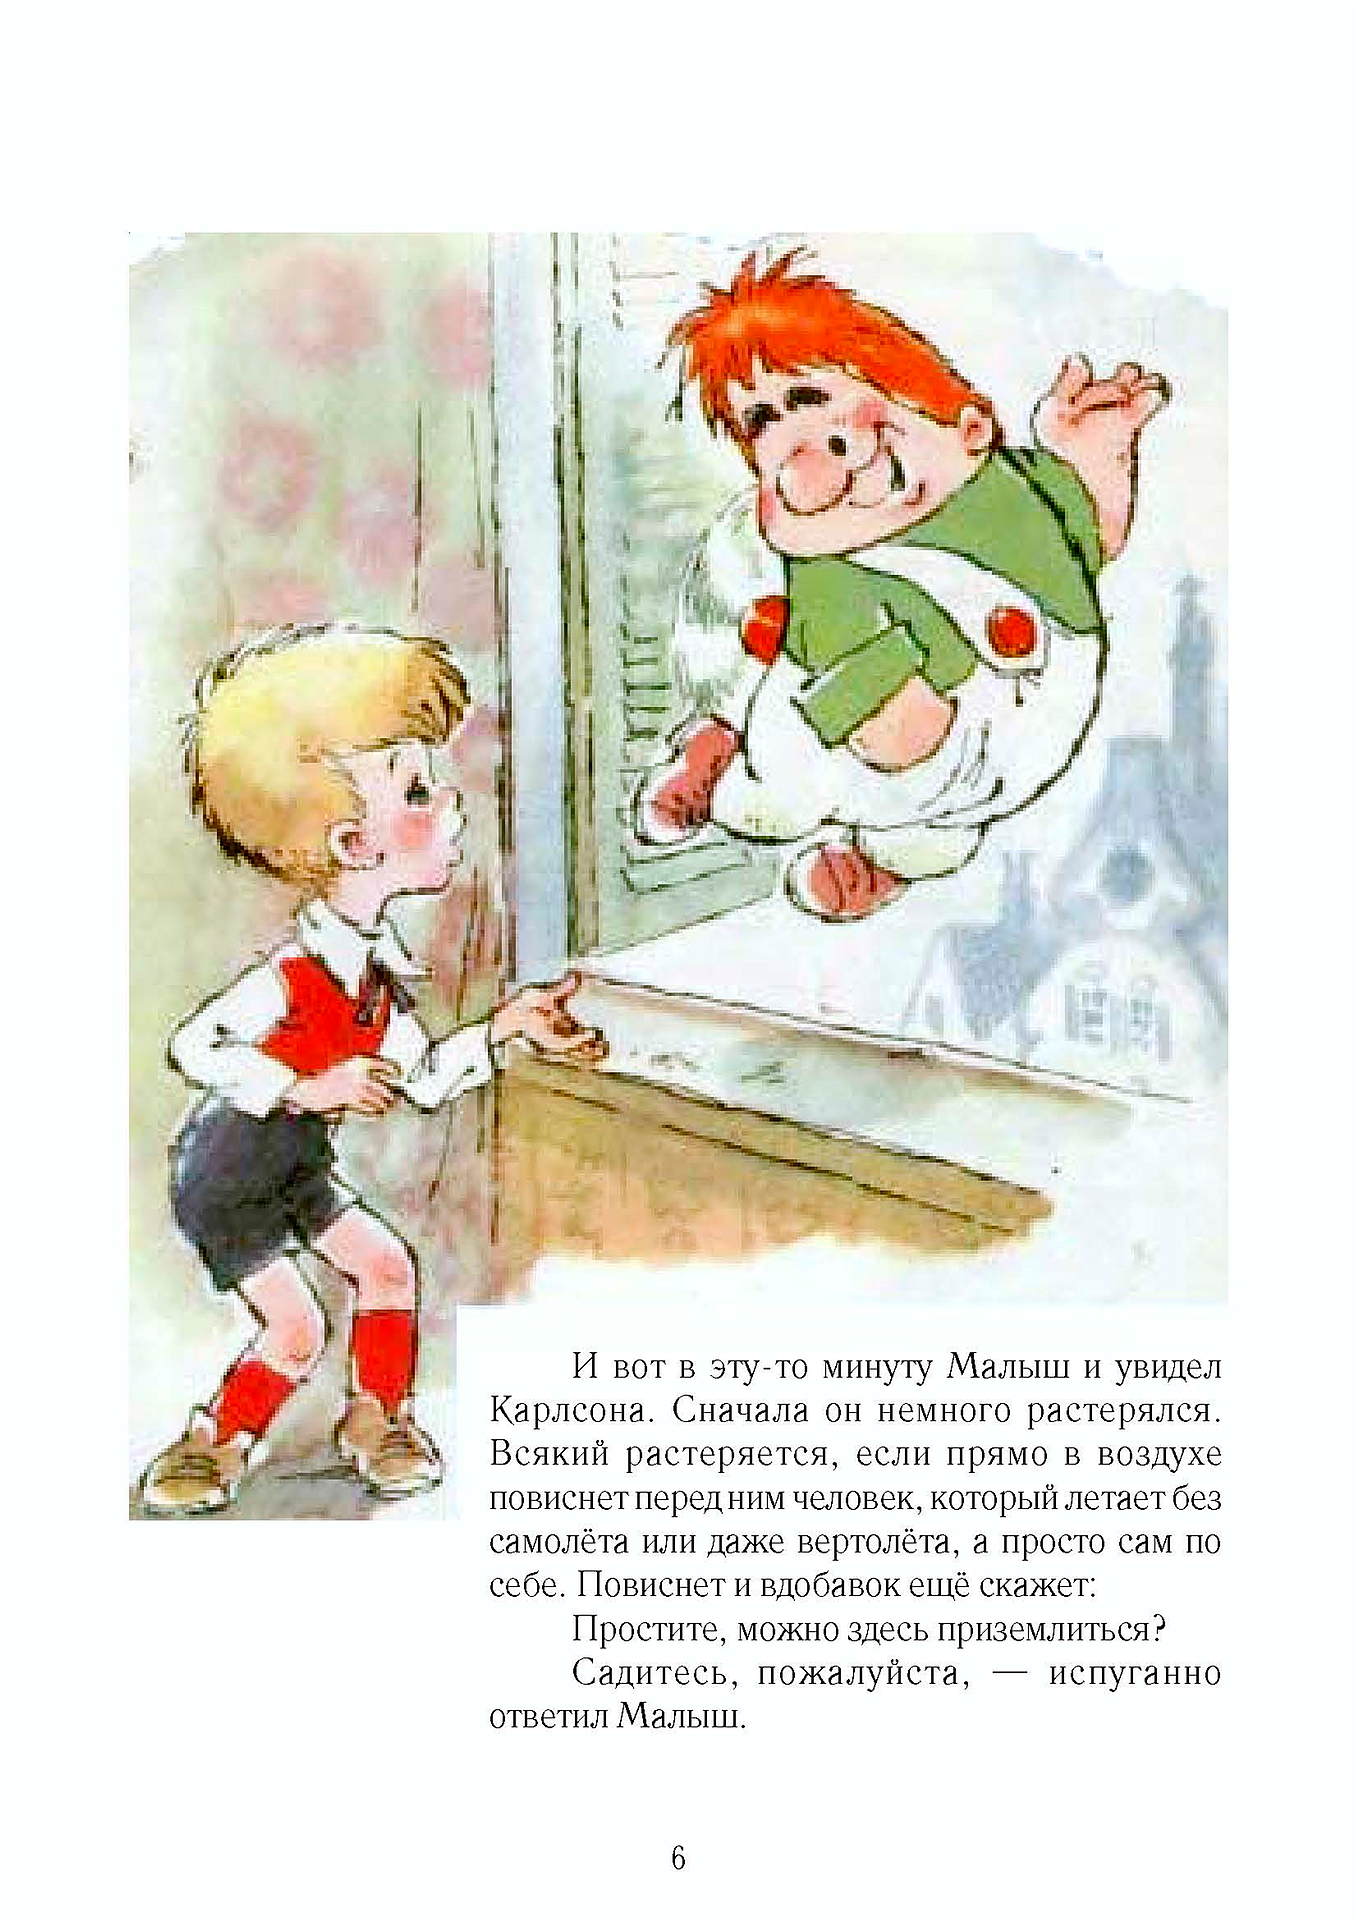 Малыш карлсон который живет на крыше читать. Книга малыш и Карлсон 1968. Малыш и Карлсон иллюстрации к книге. Карлсон который живет на крыше иллюстрации из книг.